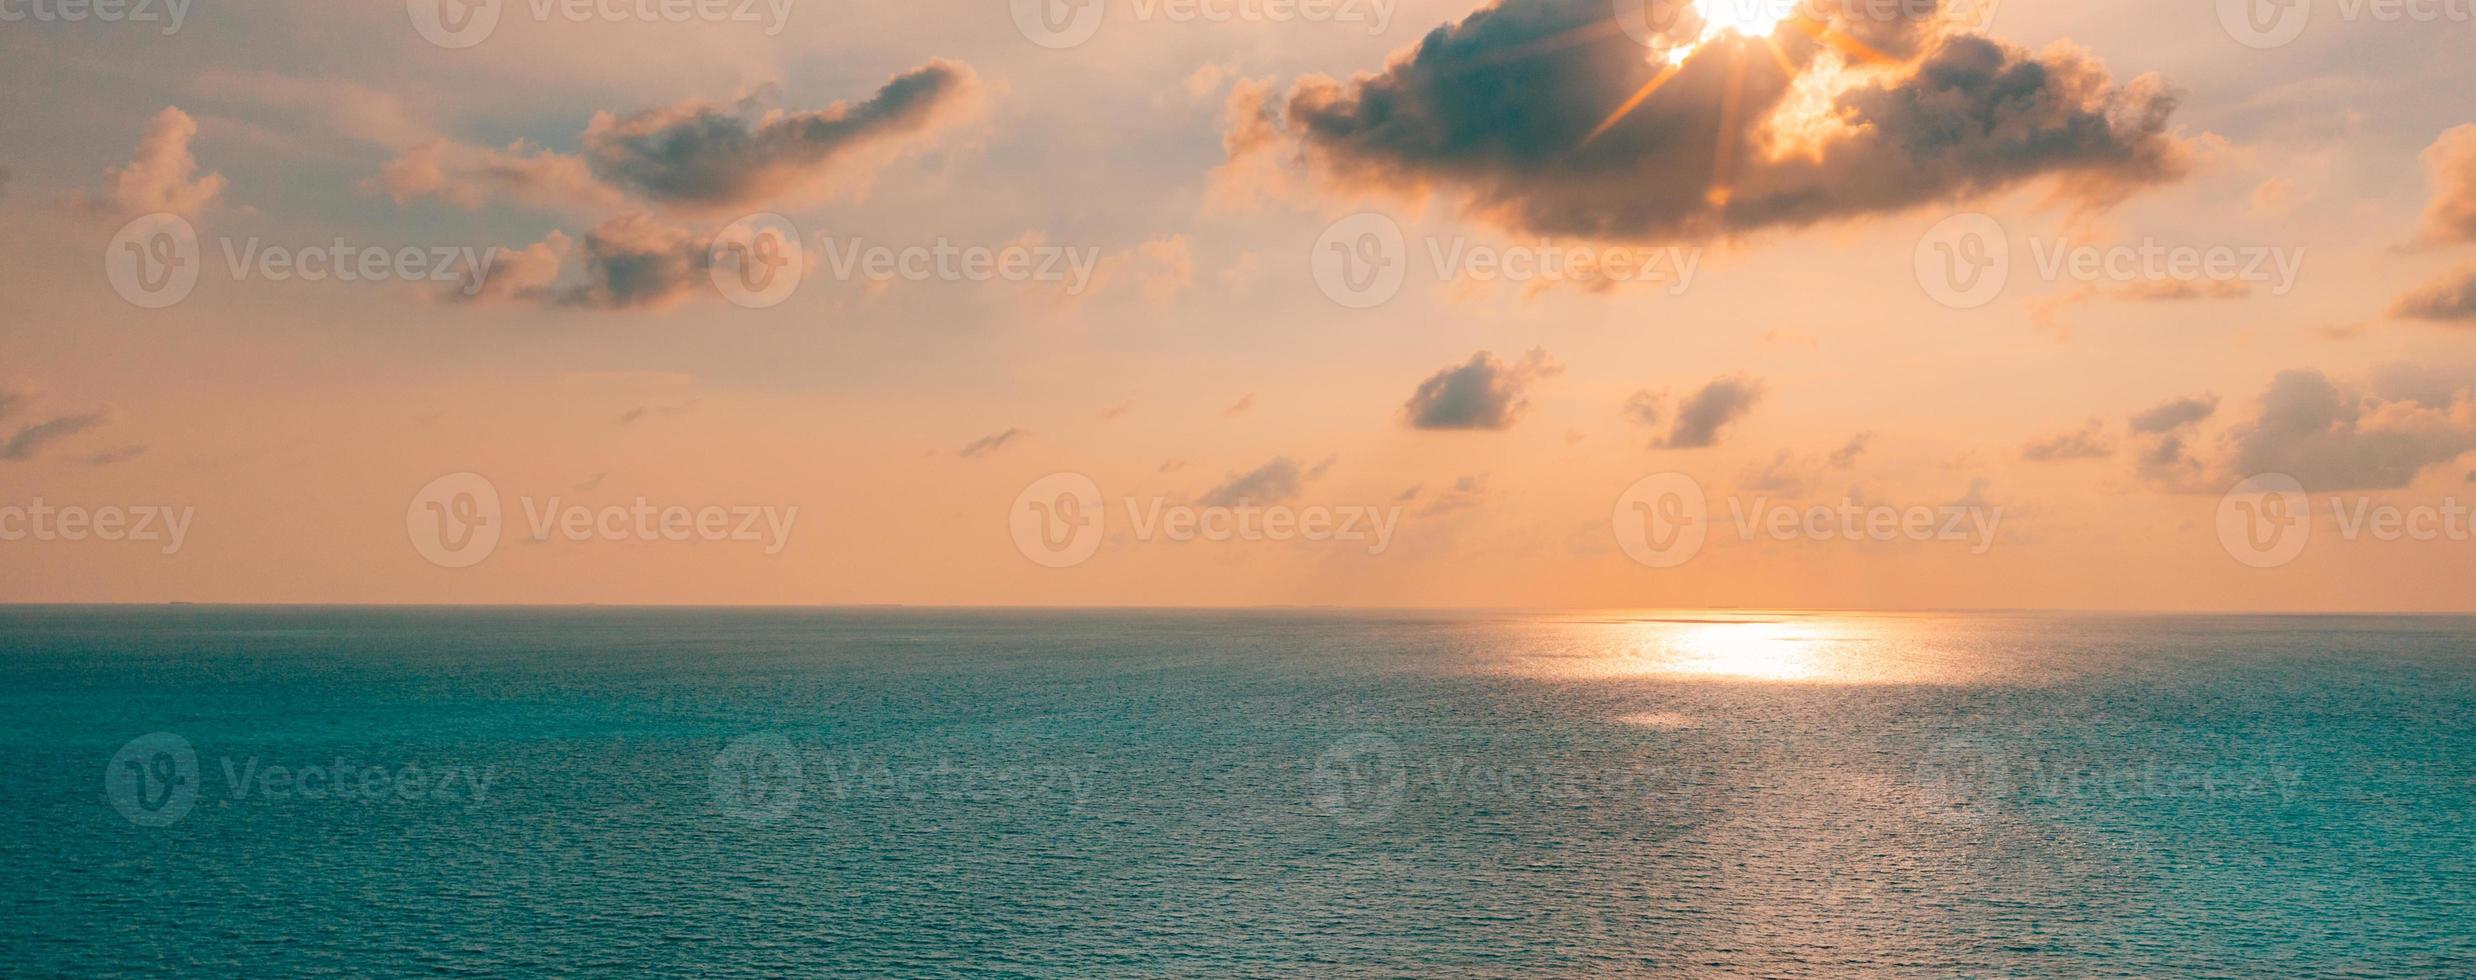 vista panoramica aerea del tramonto sull'oceano. cielo colorato, nuvole e acqua. incredibile sereno scenico foto